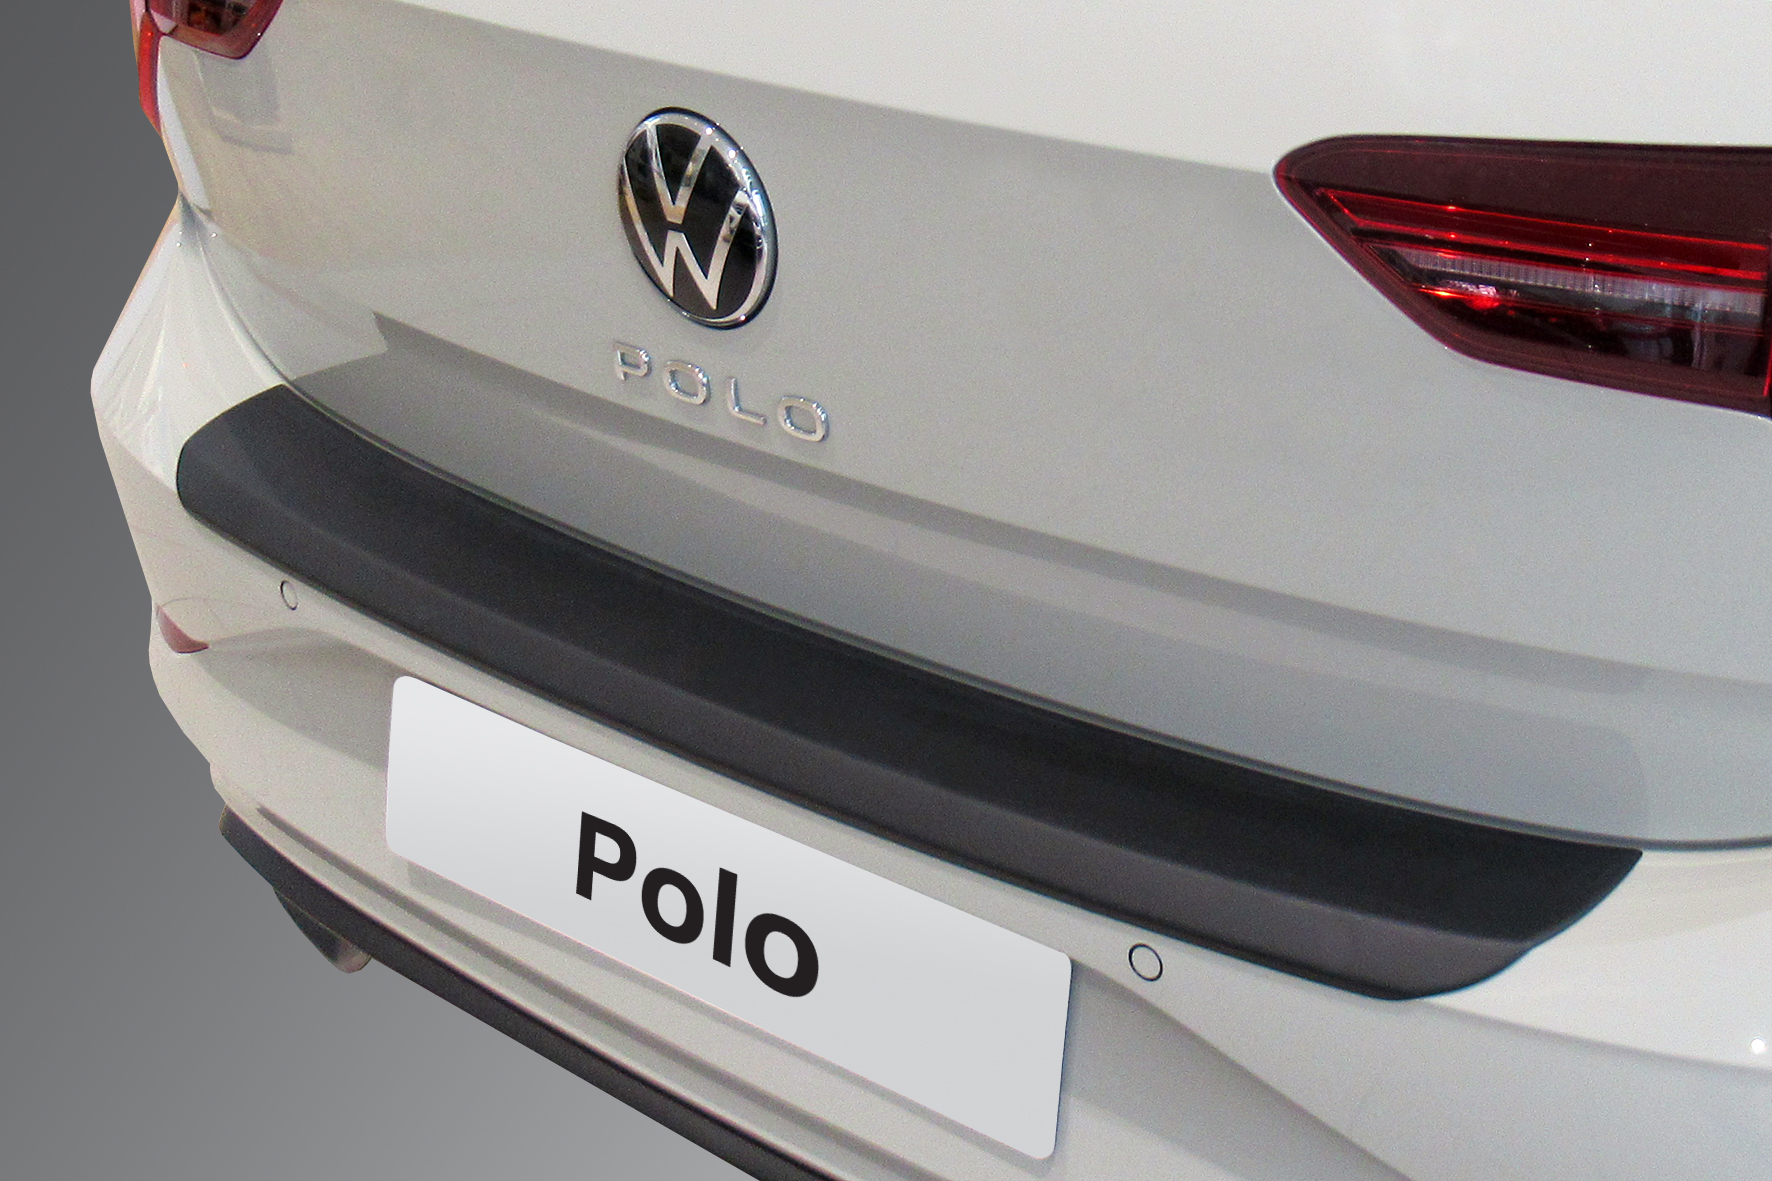 Ladekantenschutz für VW POLO - Schutz für die Ladekante Ihres Fahrzeuges